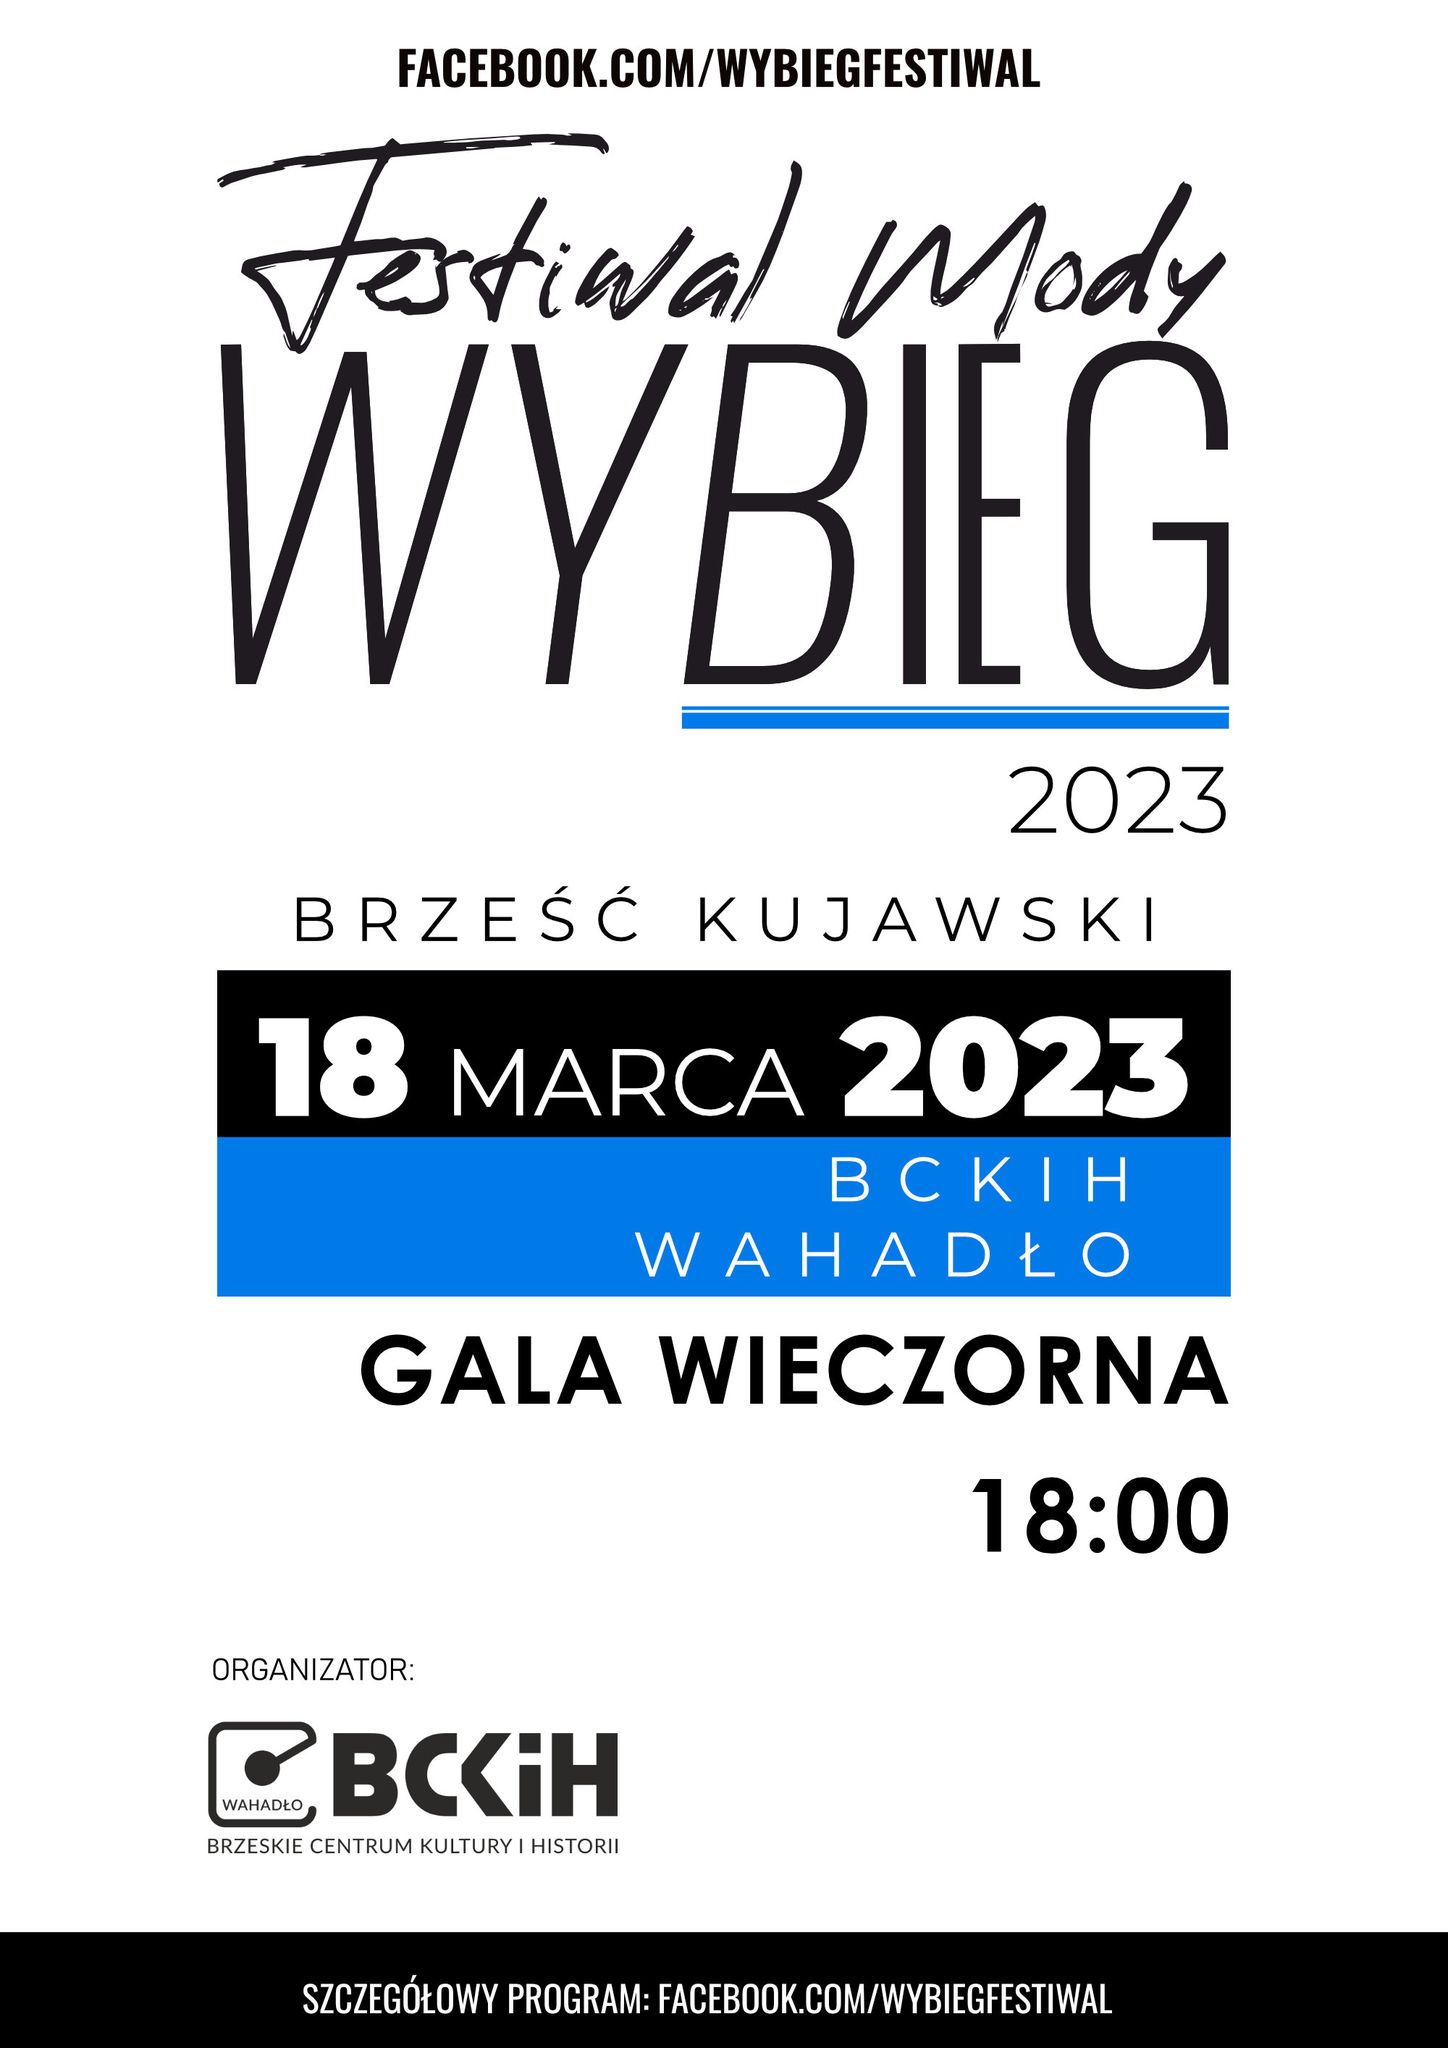 Plakat Festiwal Mody WYBIEG 2023 - Gala Wieczorna 131254